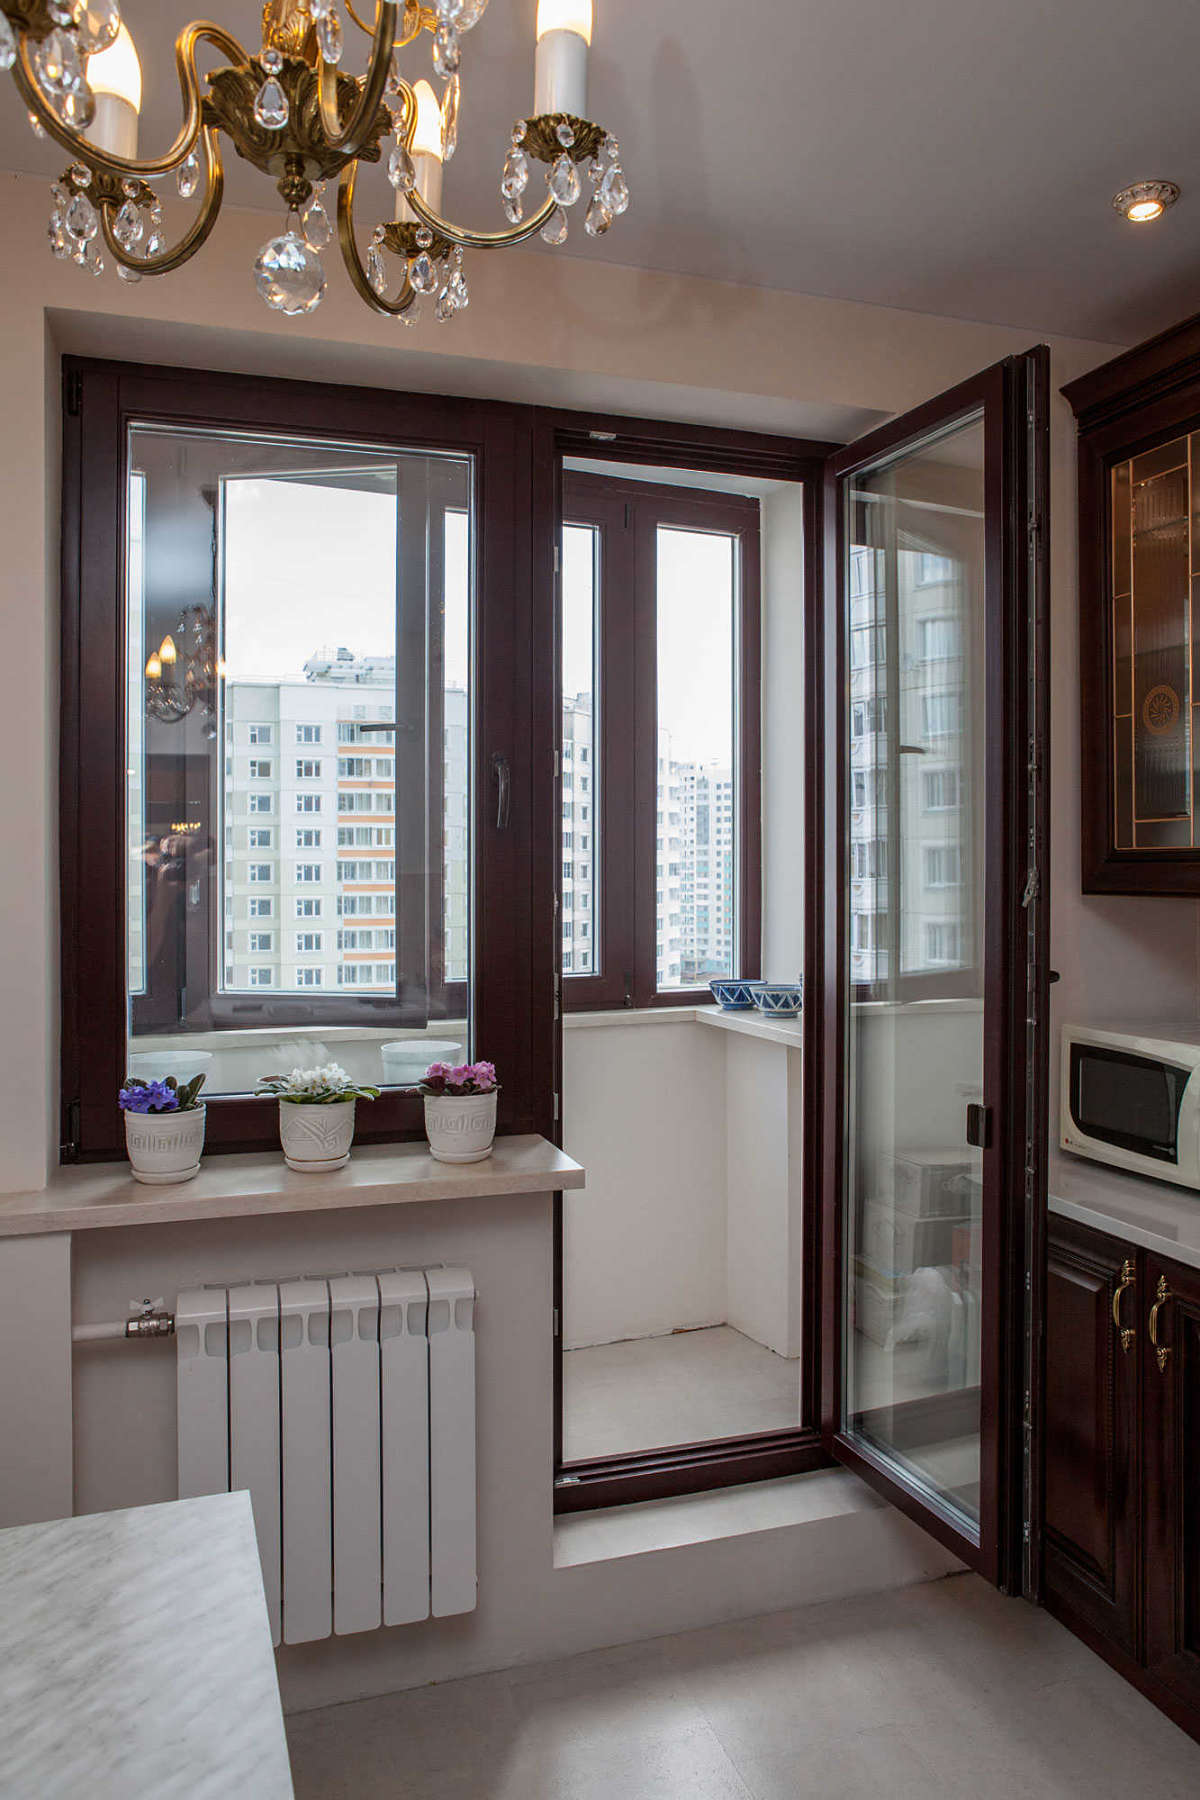 окно с балконом в кухне дизайн